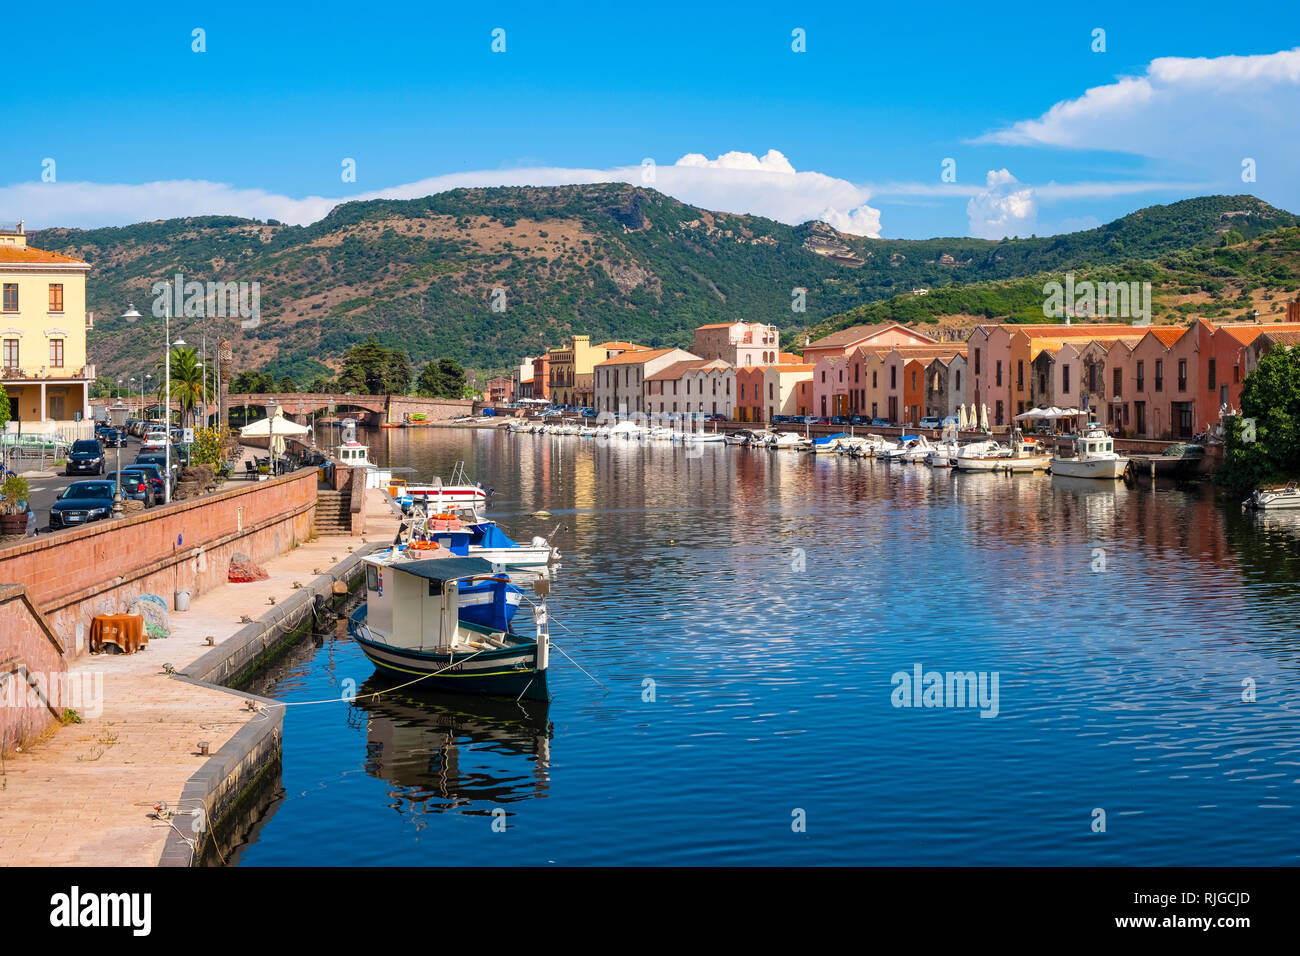 Bosa, Sardinien/Italien - 2018/08/13: Panoramablick auf die Altstadt von Bosa durch den Fluss Temo Bahndamm mit bunten Häuser und Boa Stockfoto